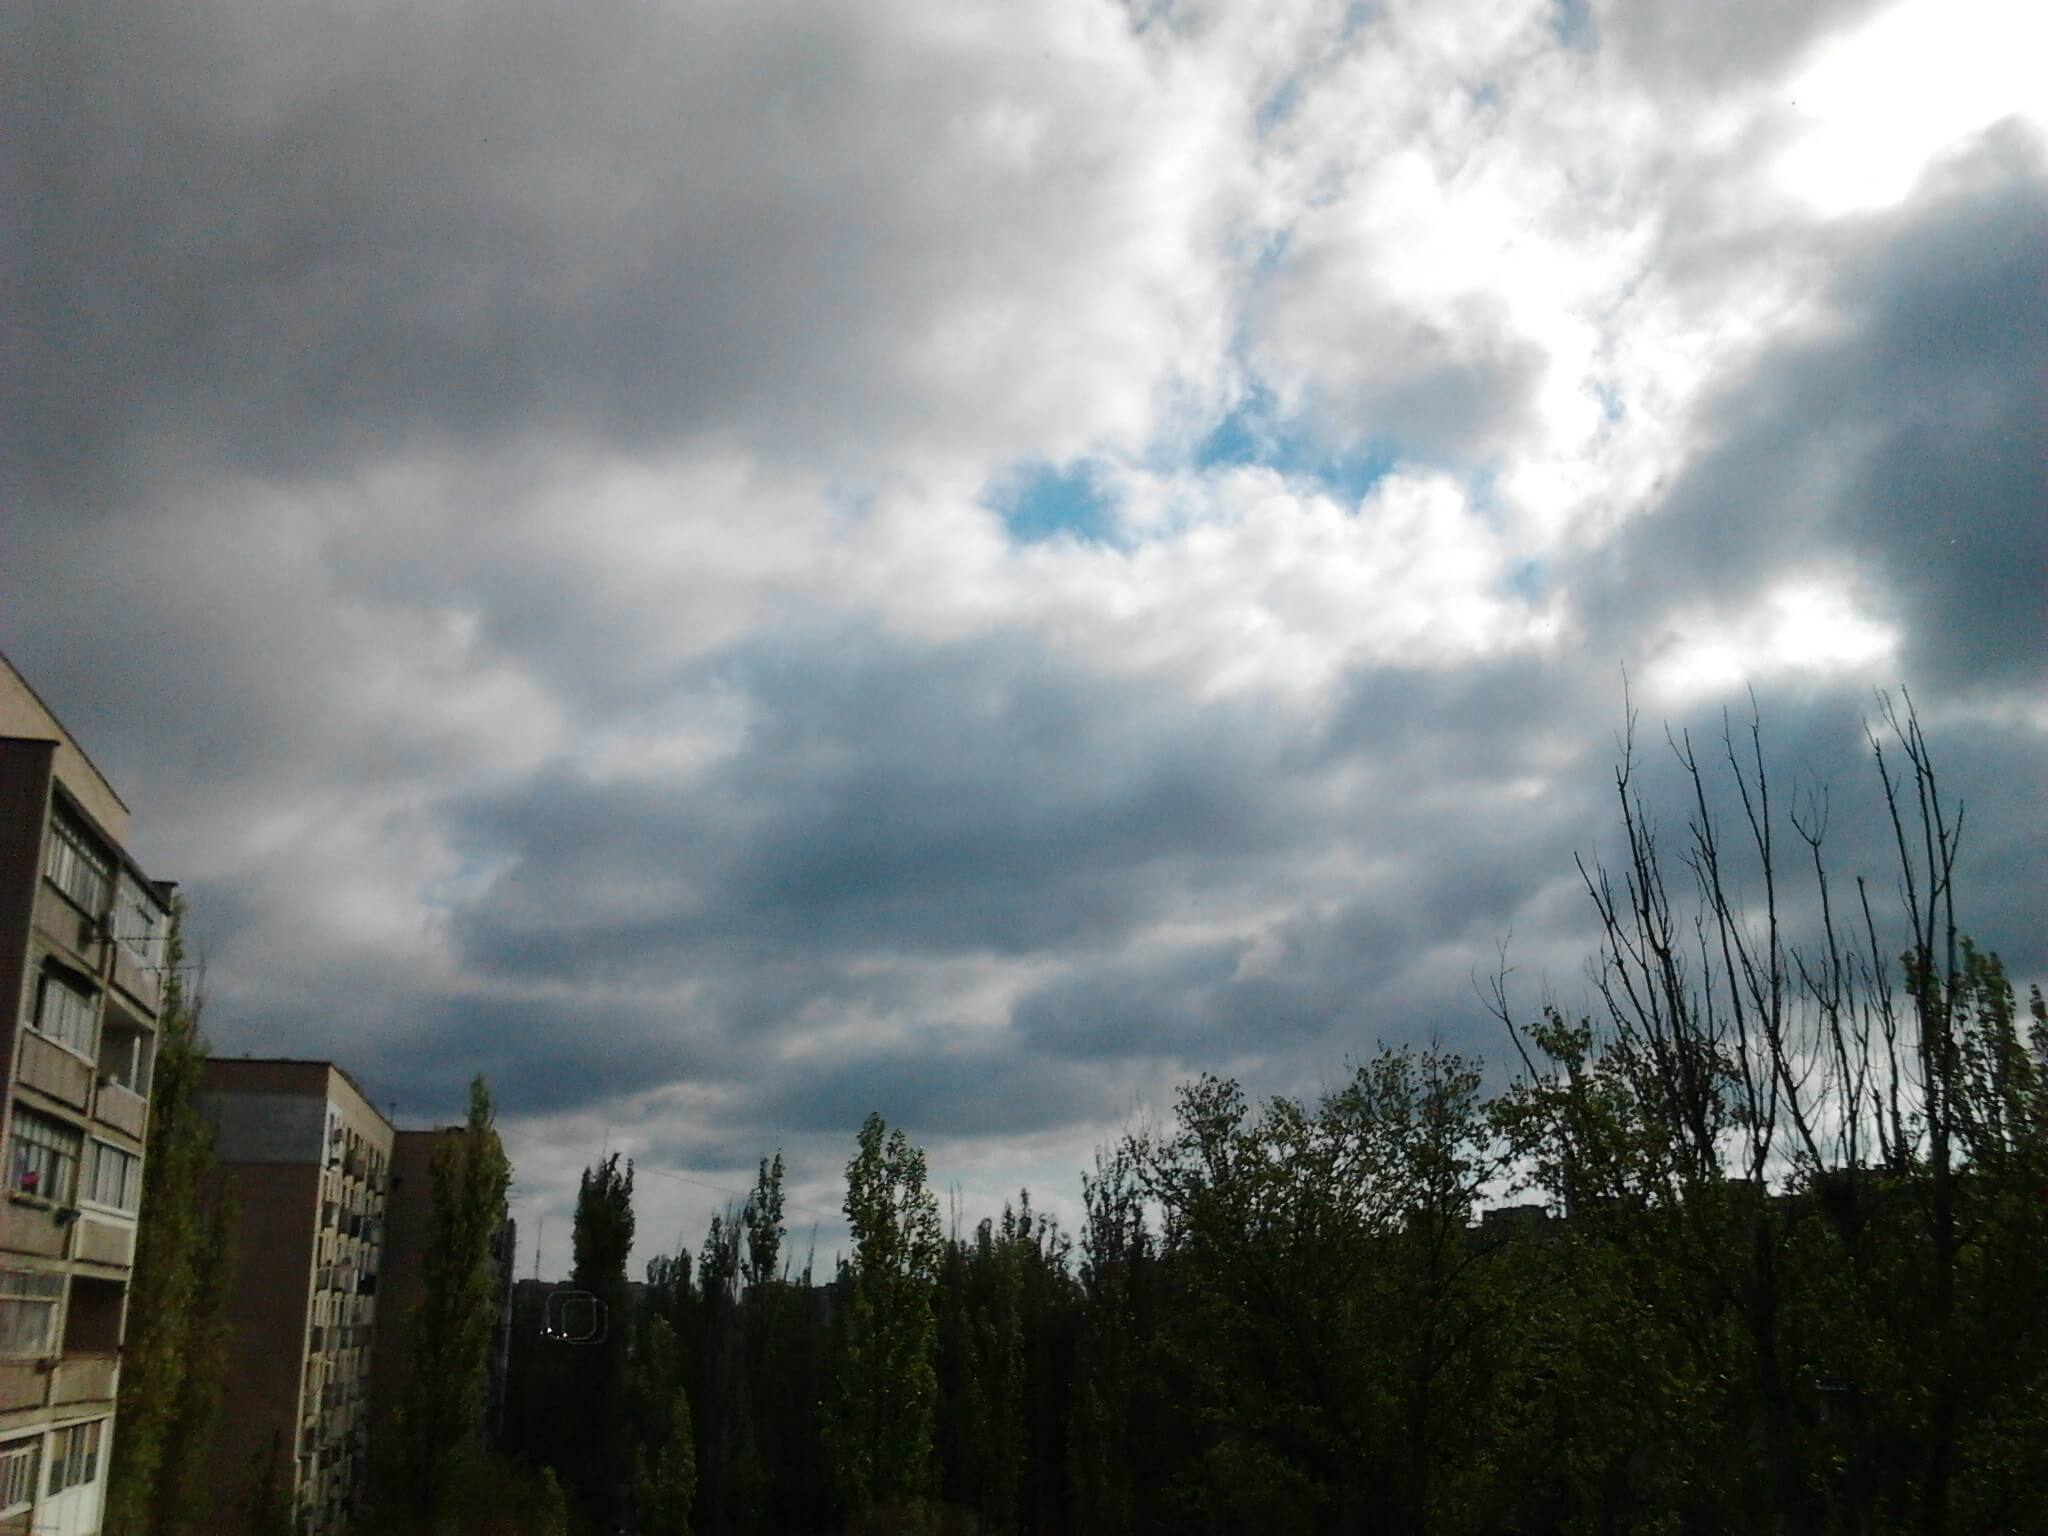 После стирки.
Интересное примечание; вид из окна, восточная к дому сторона.
Погода в Херсоне: прохладно, облачно, ветренно, солнечно / image44 / 2020.04.26 / 08:55